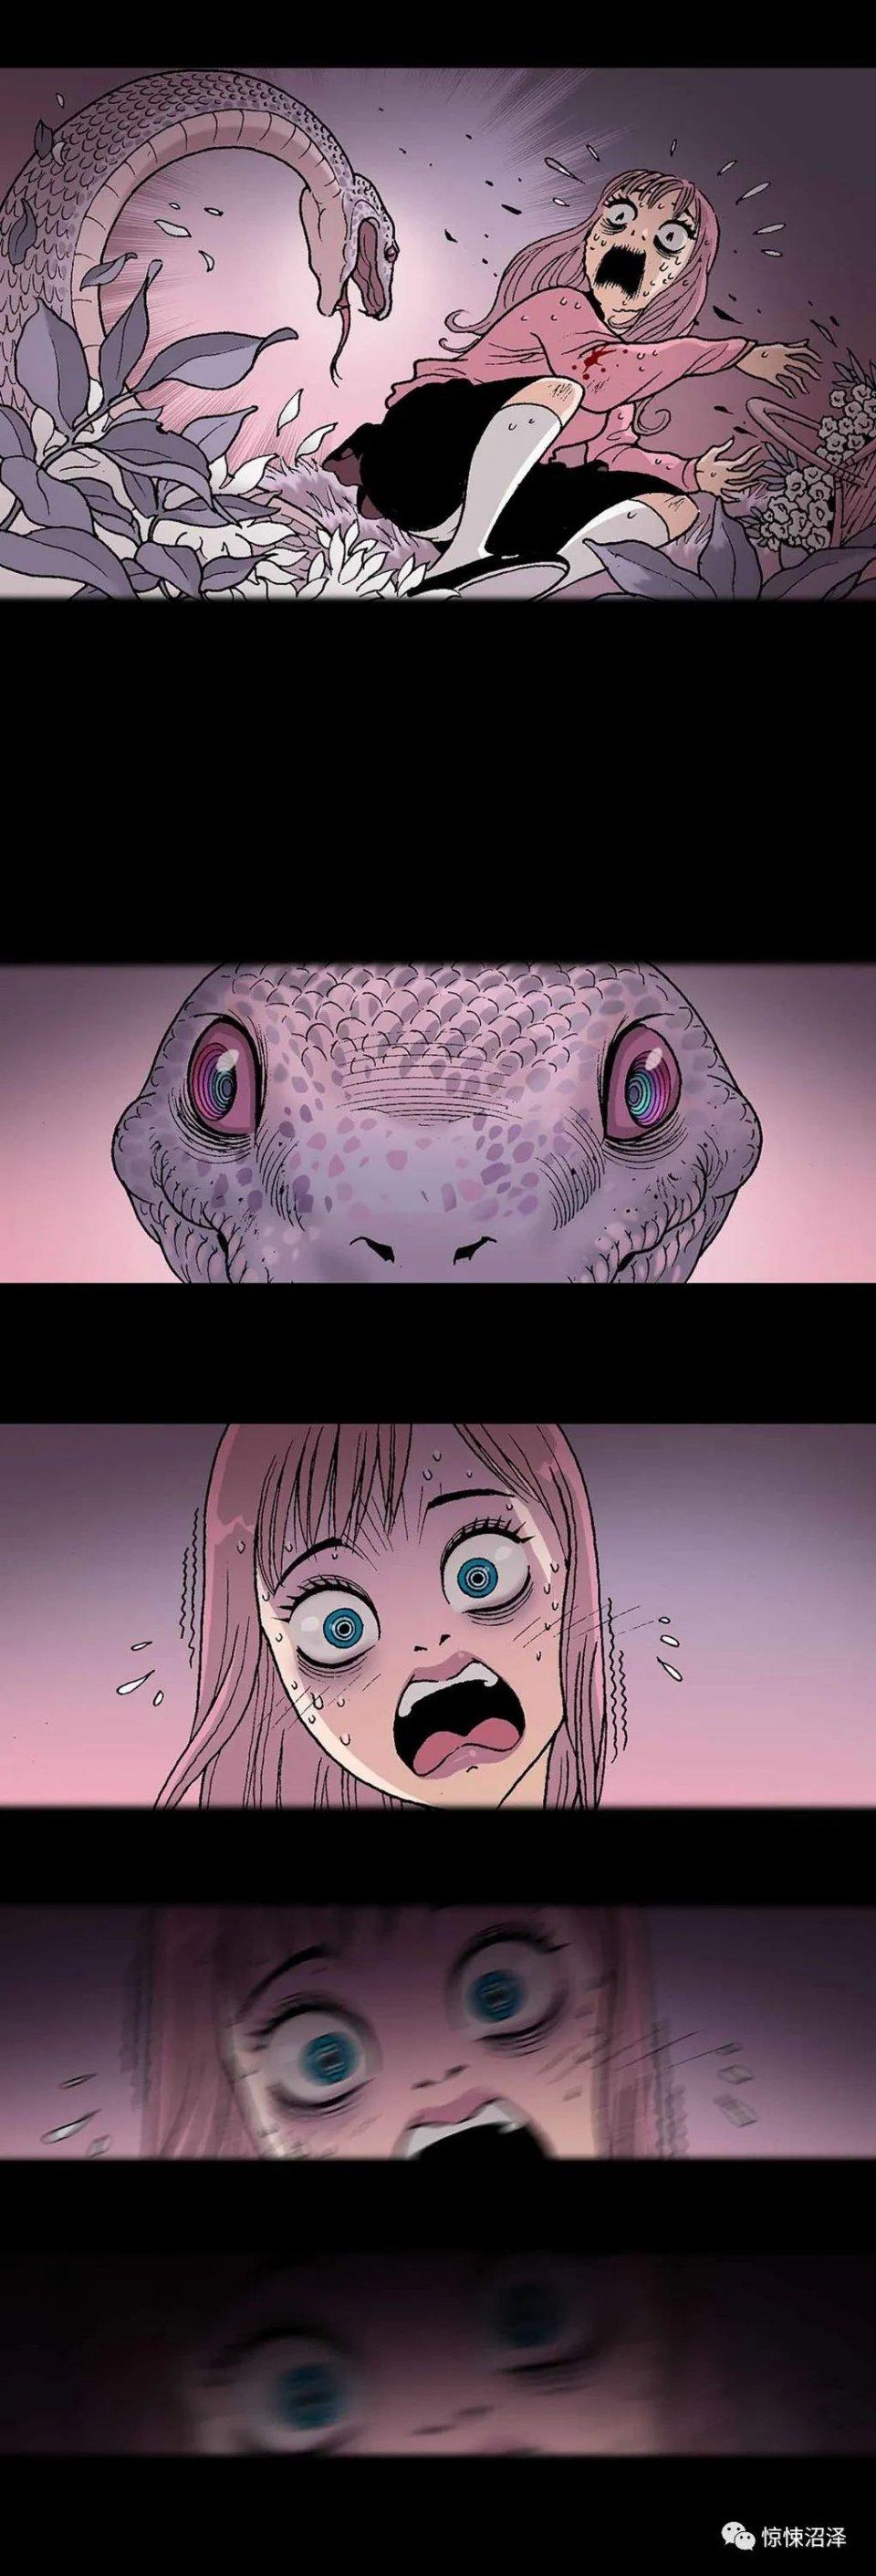 无声漫画,蛇精男,惨遭蟒蛇袭击的可怜女孩